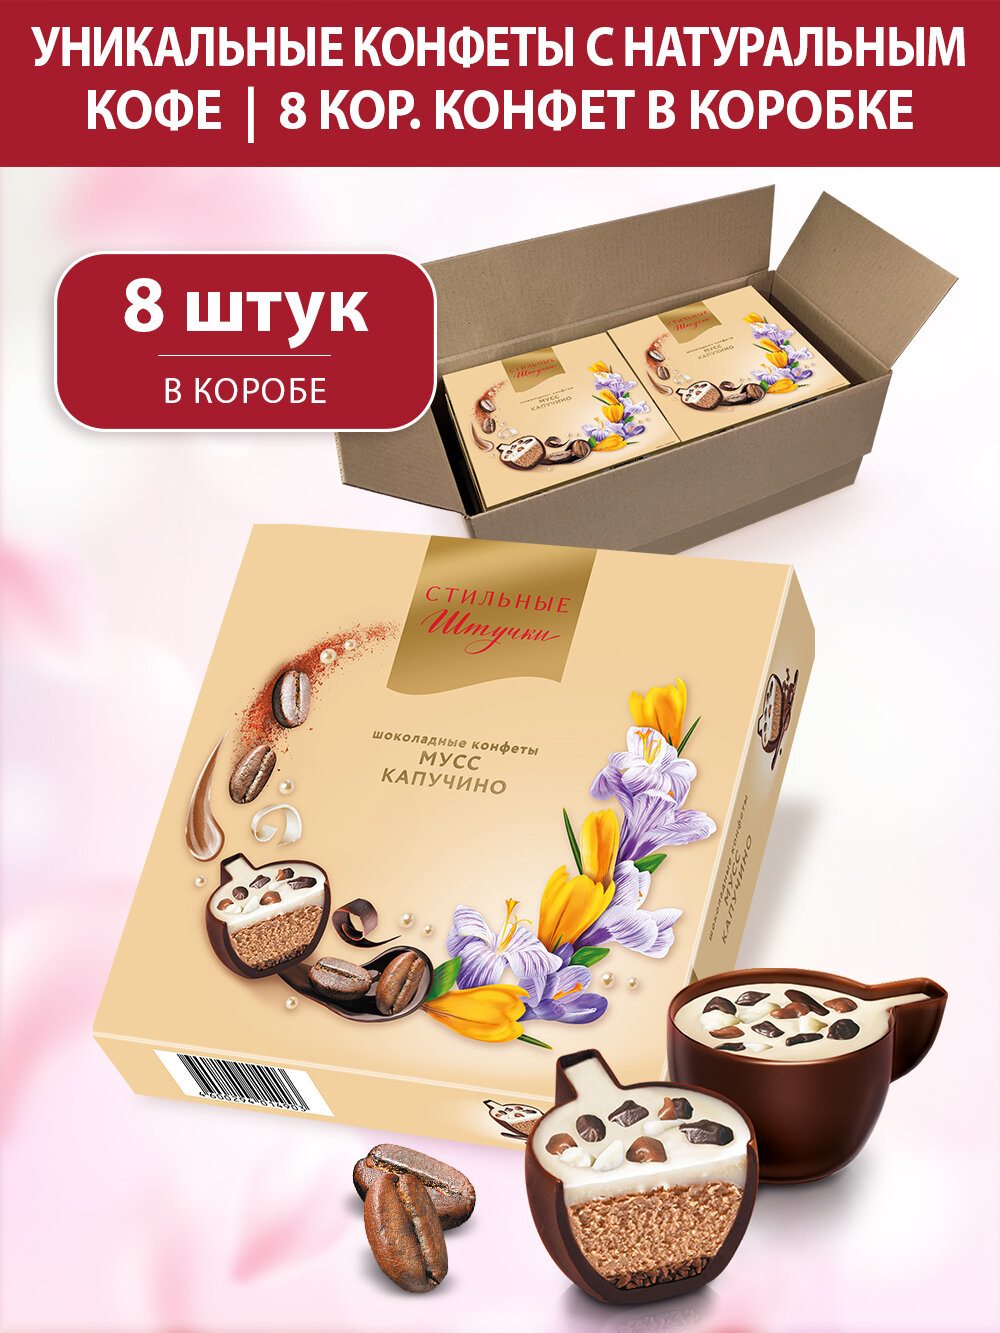 Конфеты шоколадные Стильные штучки мусс капучино подарочные в весенней коробке с символикой 8 марта, 8 шт по 104 г